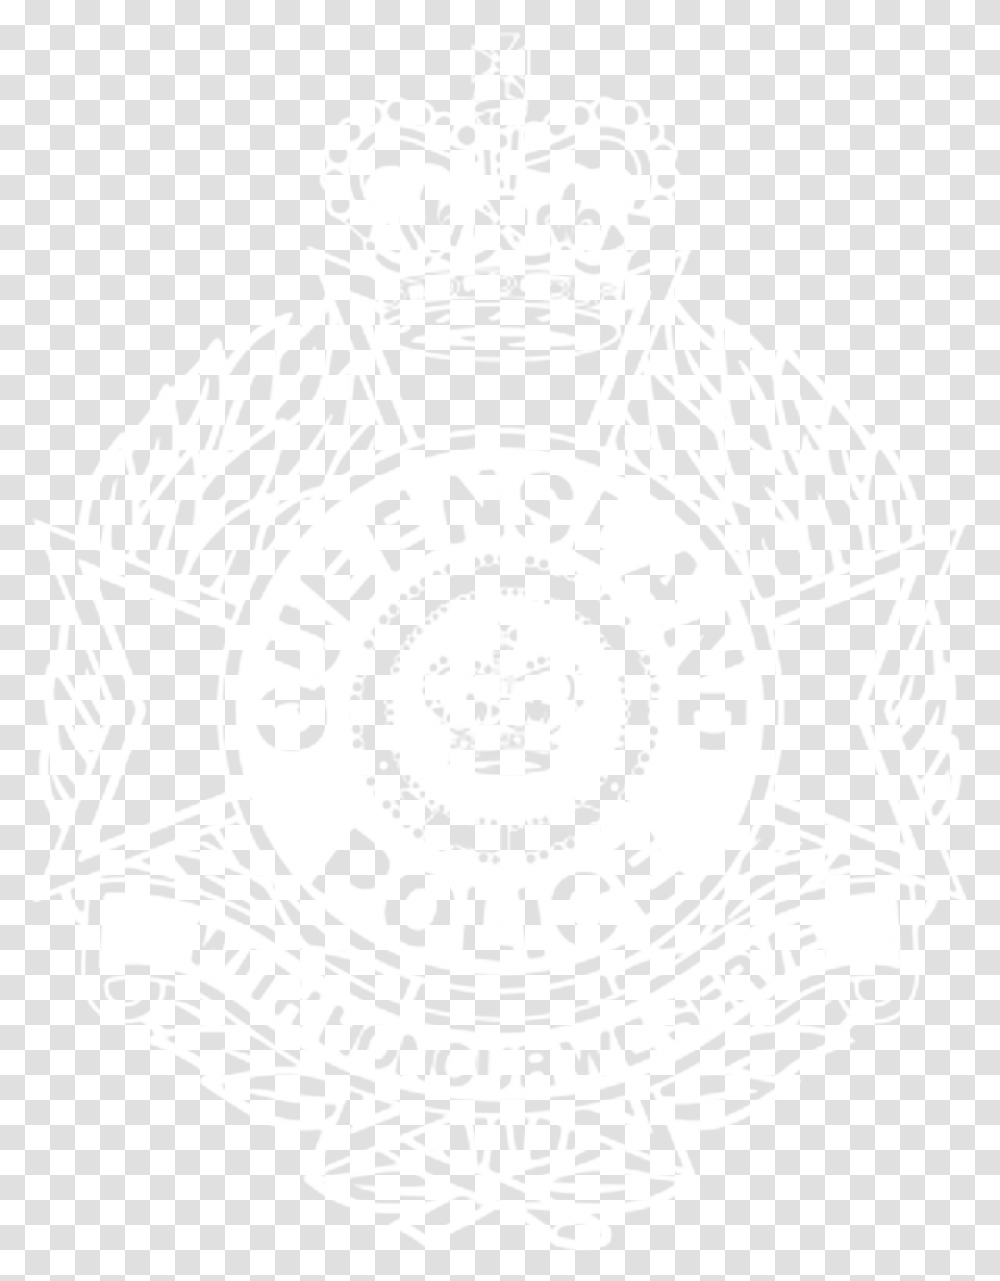 Queensland Police Logo White Solid, Symbol, Trademark, Badge, Emblem Transparent Png